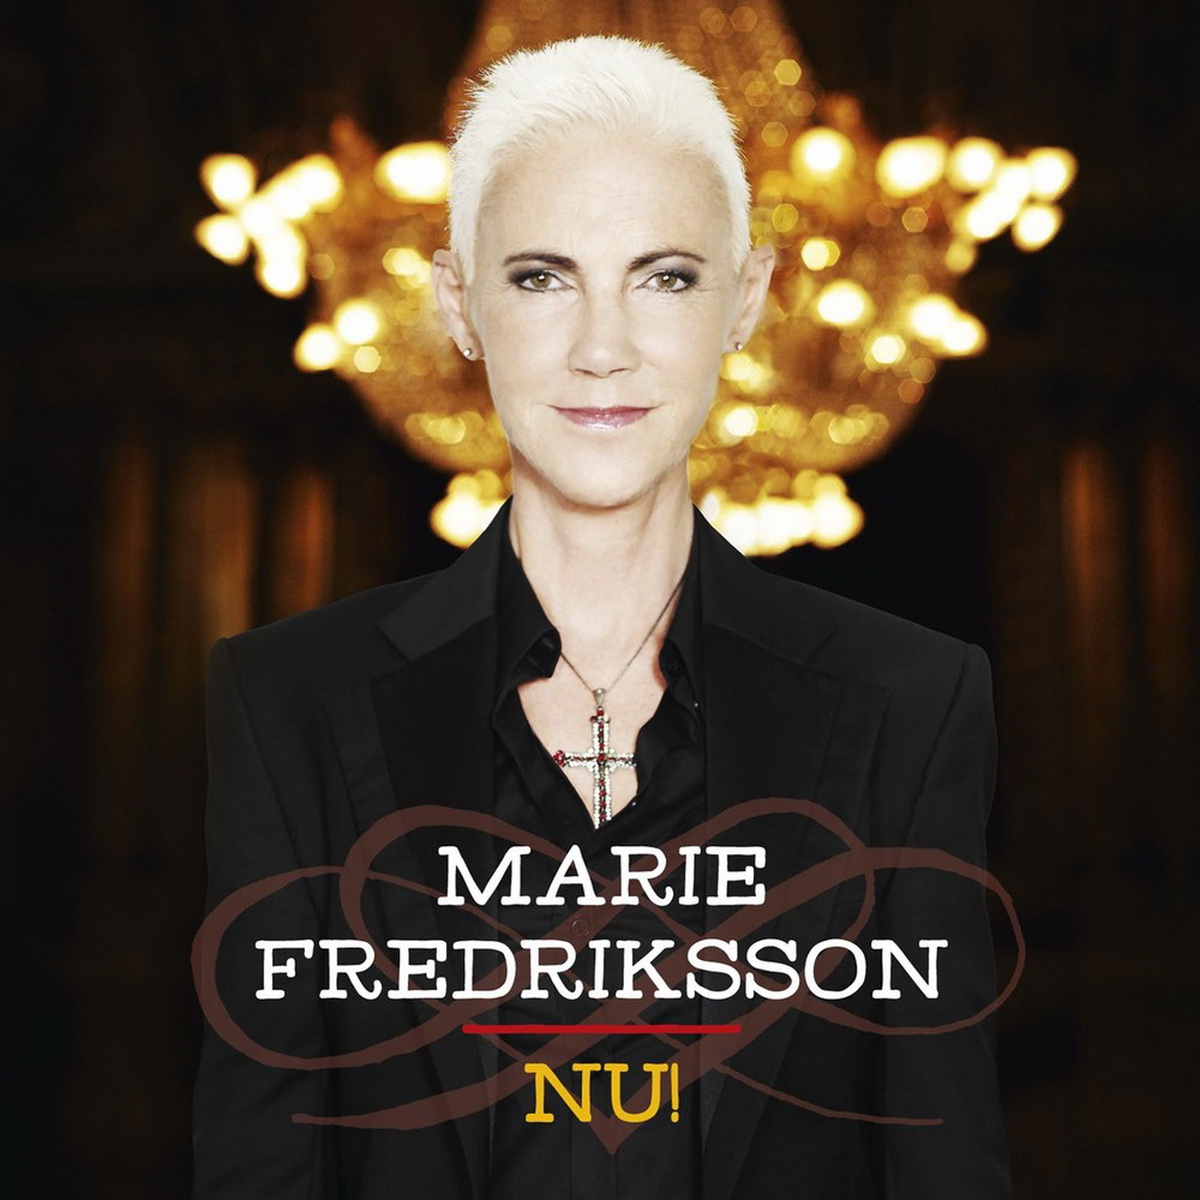 Marie Fredriksson Marie Fredriksson 036